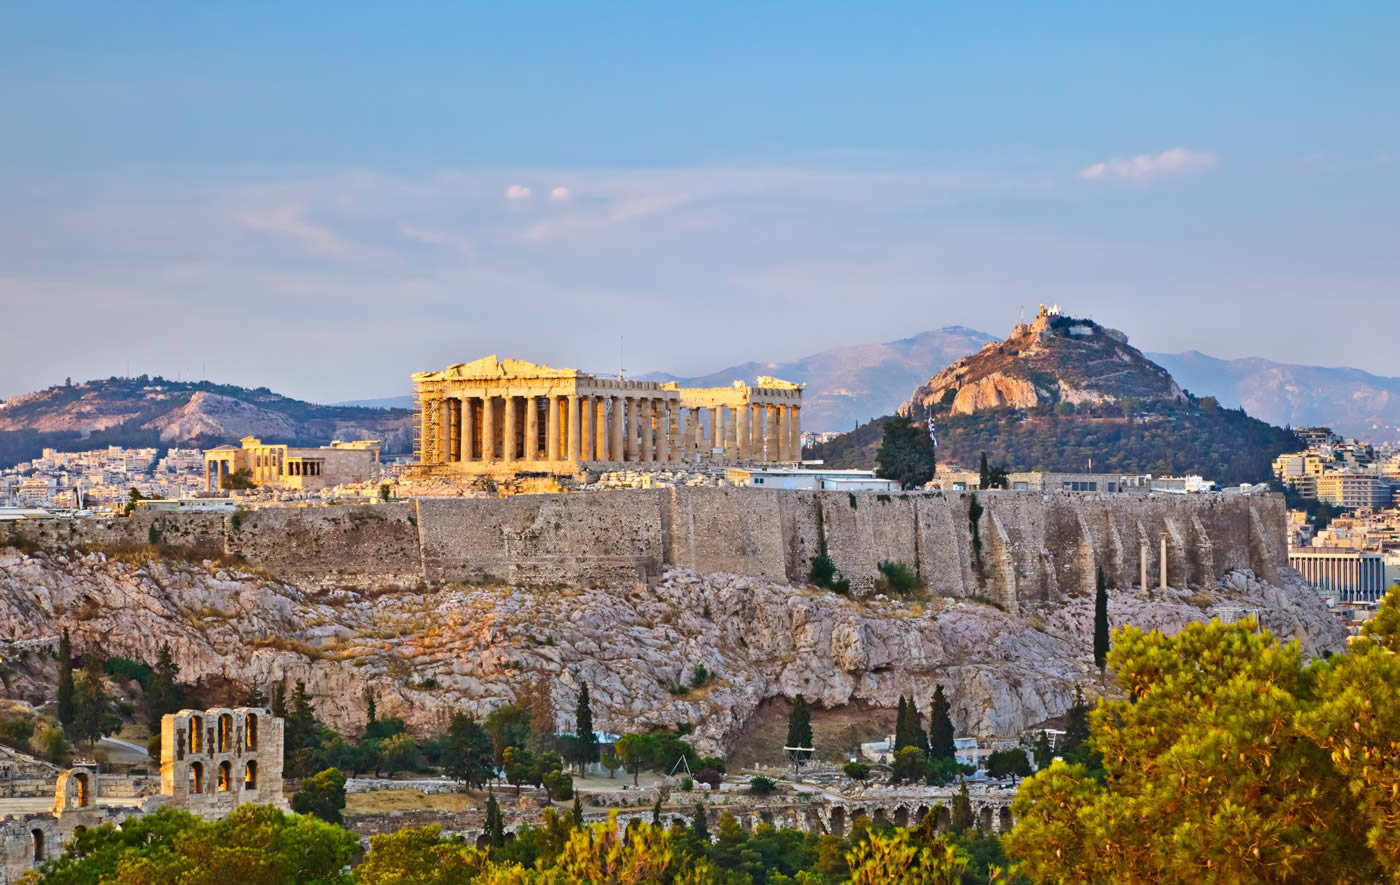 Yποψήφια ως καλύτερος πολιτιστικός προορισμός για το 2017 η Αθήνα